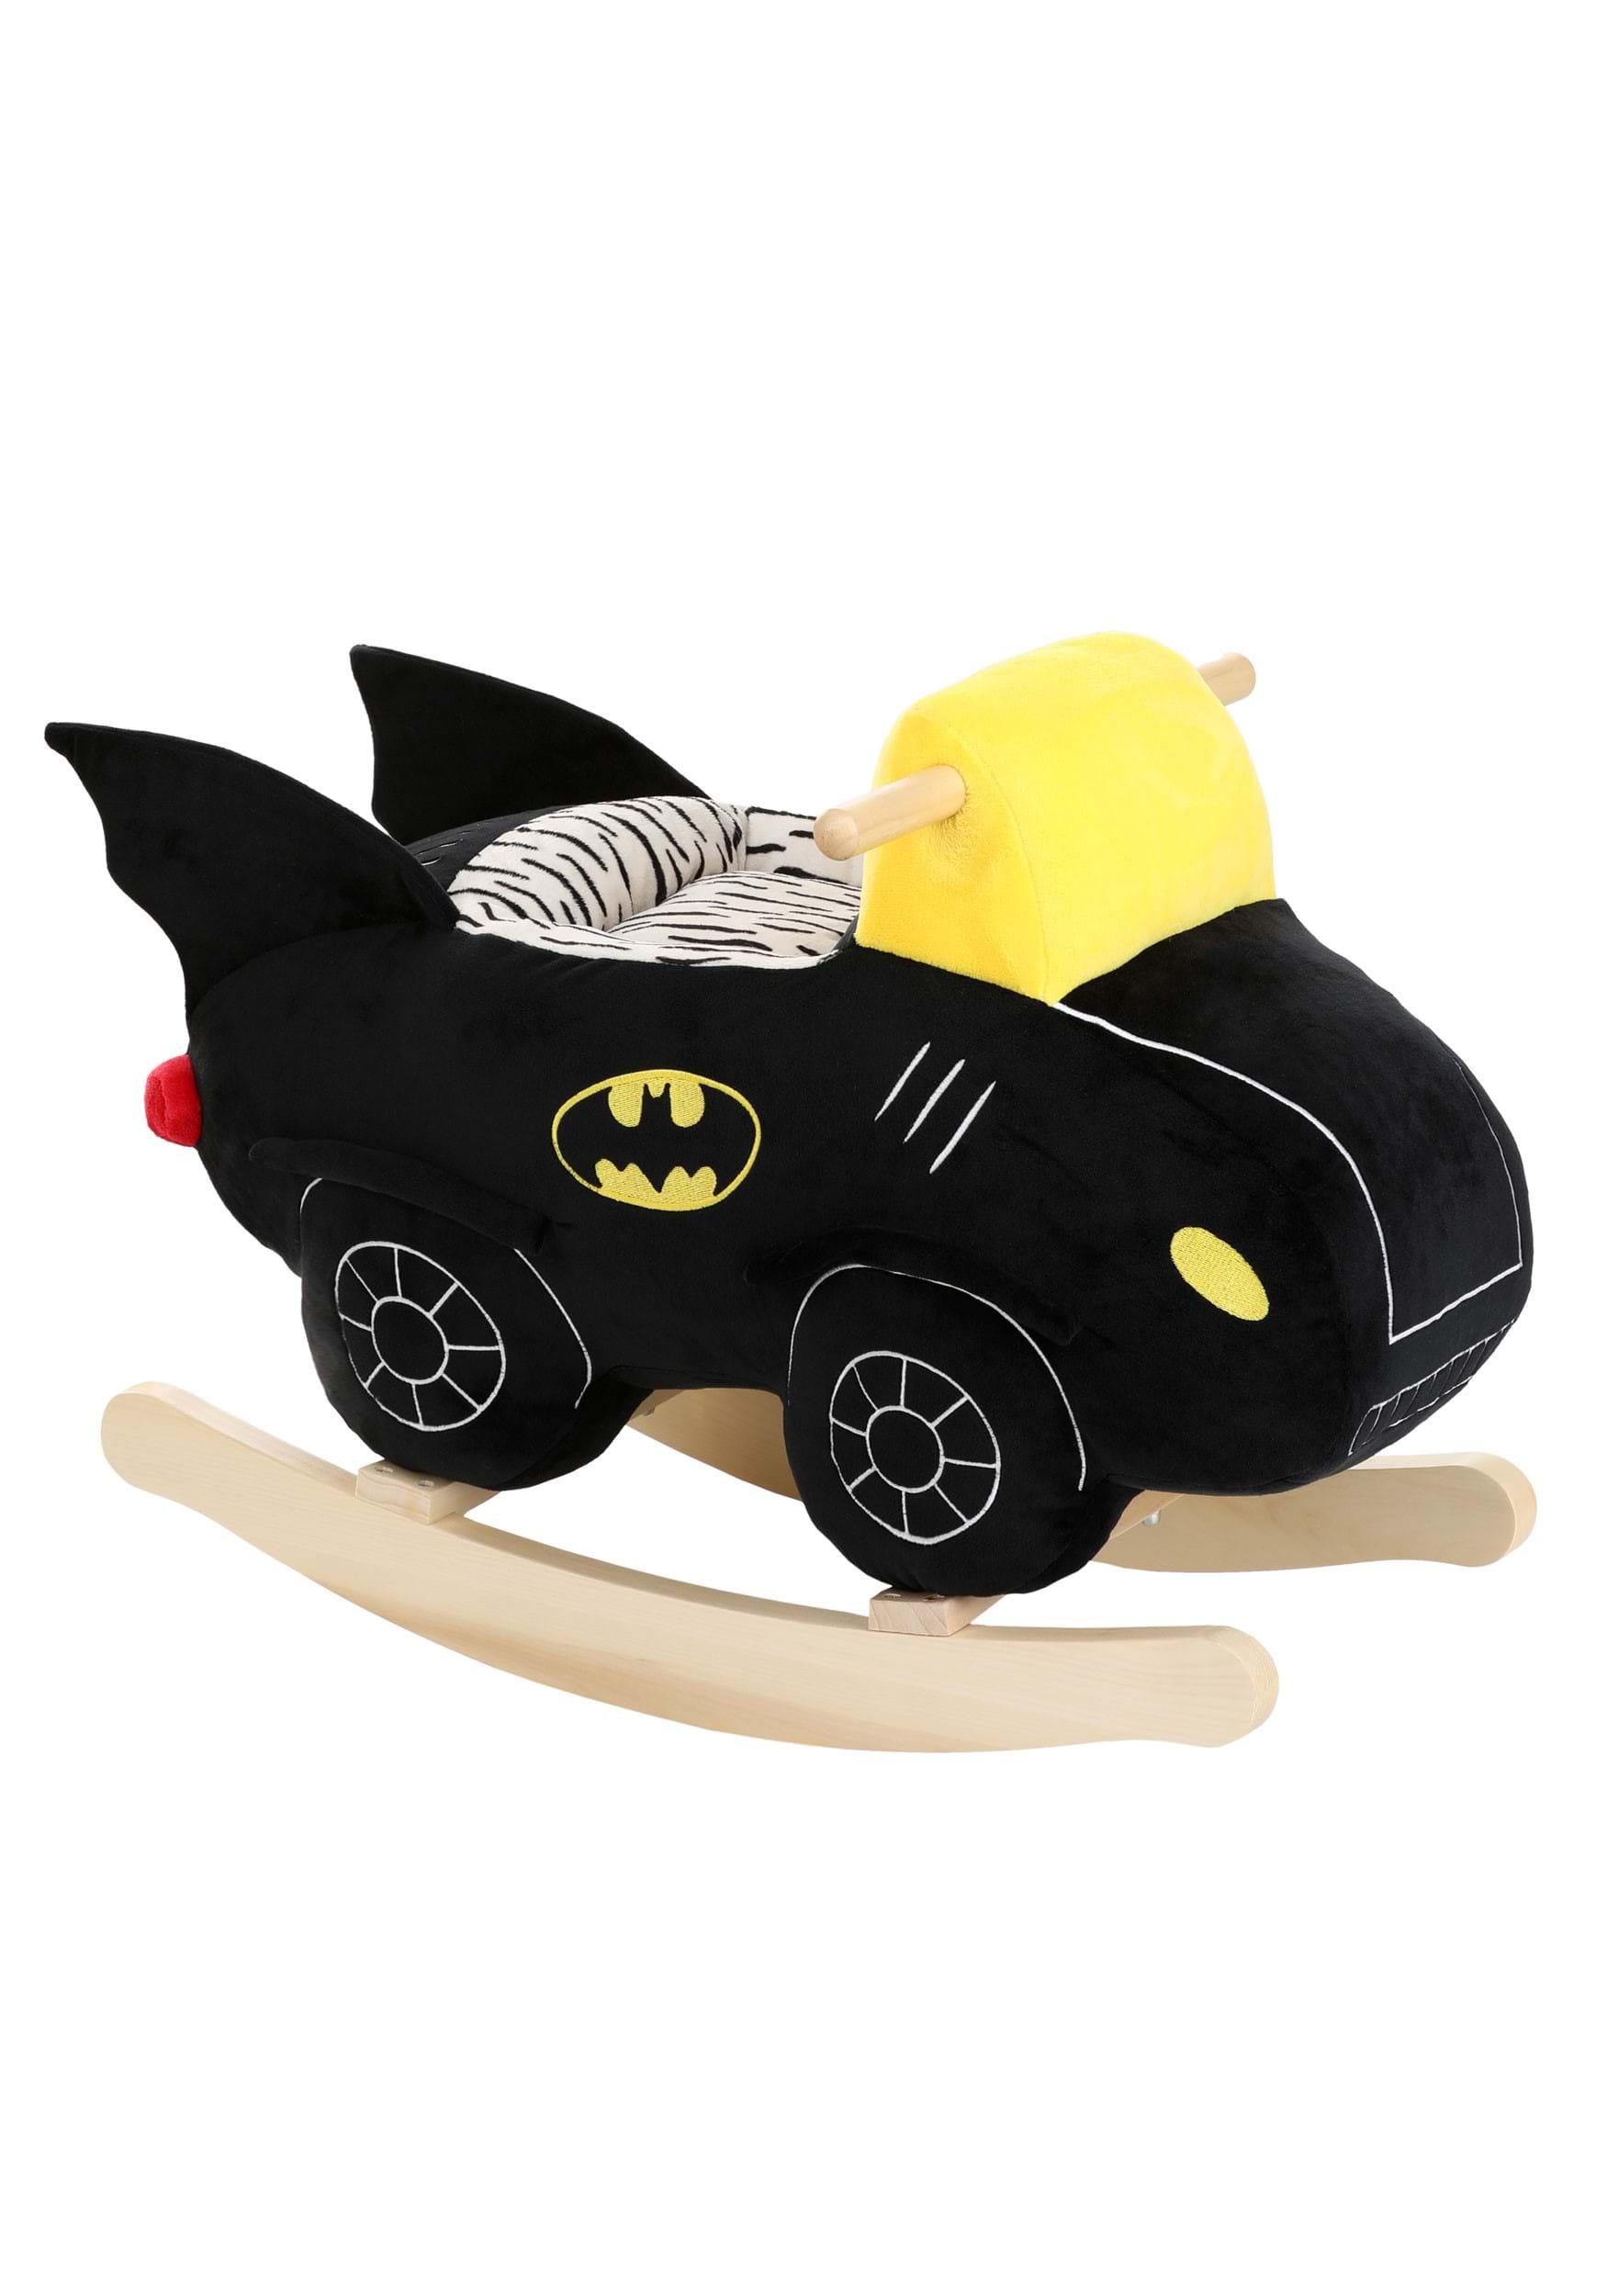 Batman Plush Batmobile Toy Rocker